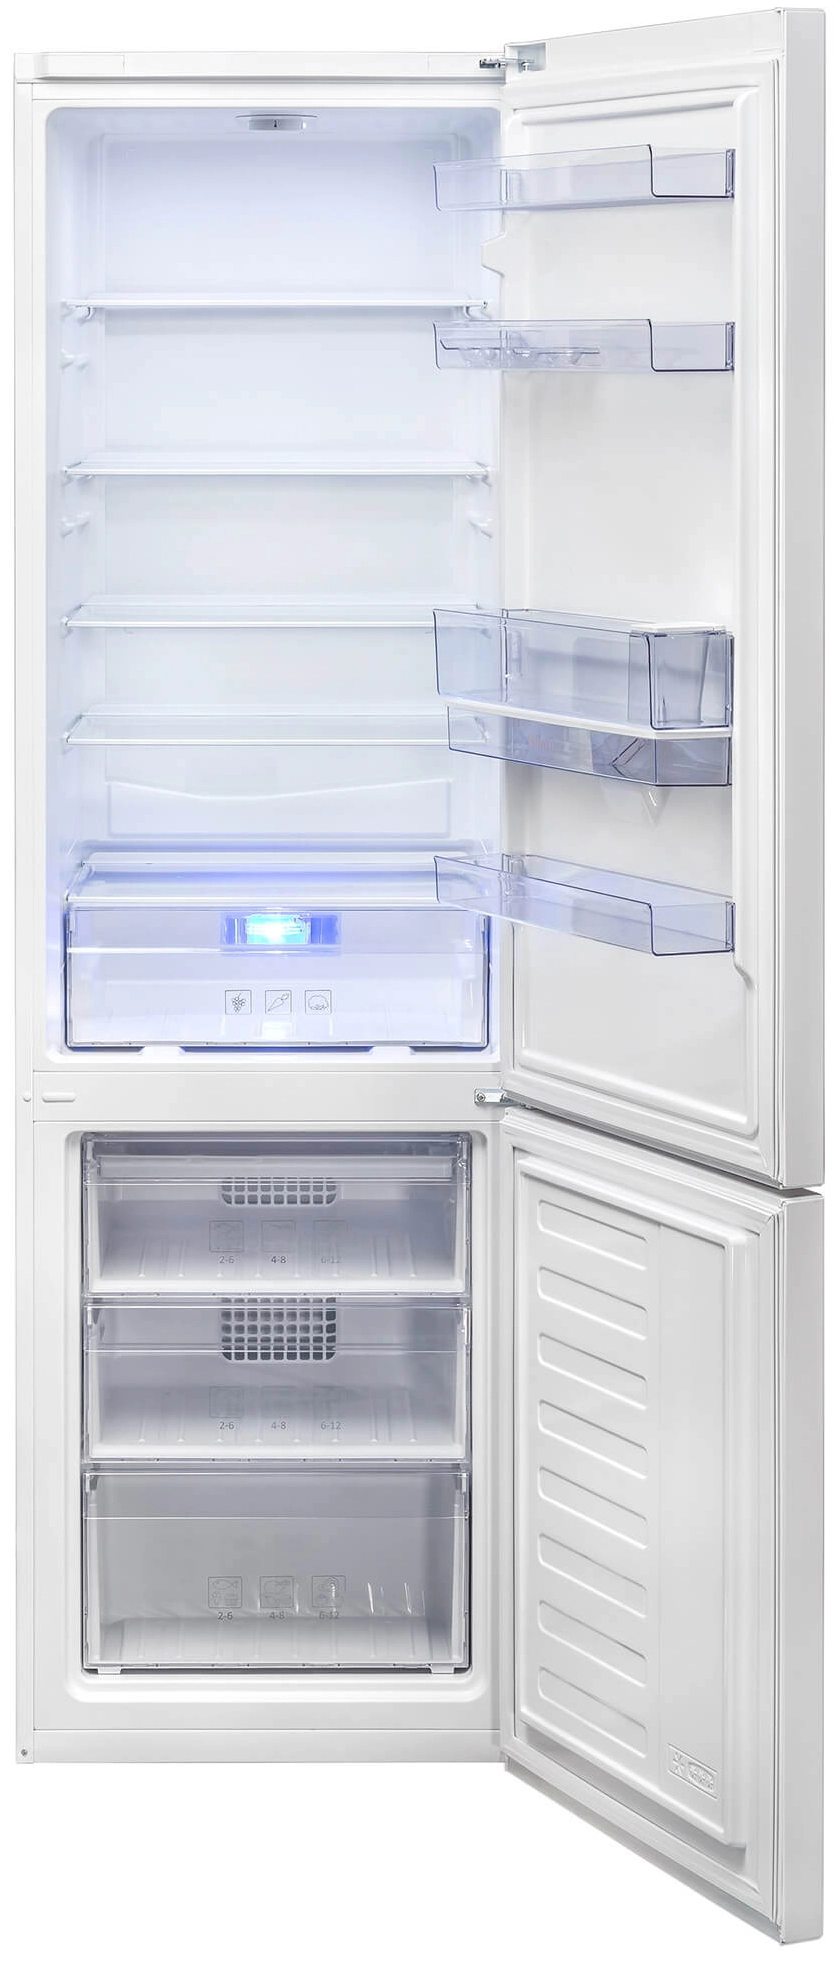 Холодильник с нижней морозильной камерой Beko RCSA400K20DW, 377 л, 201 см, A+, Белый